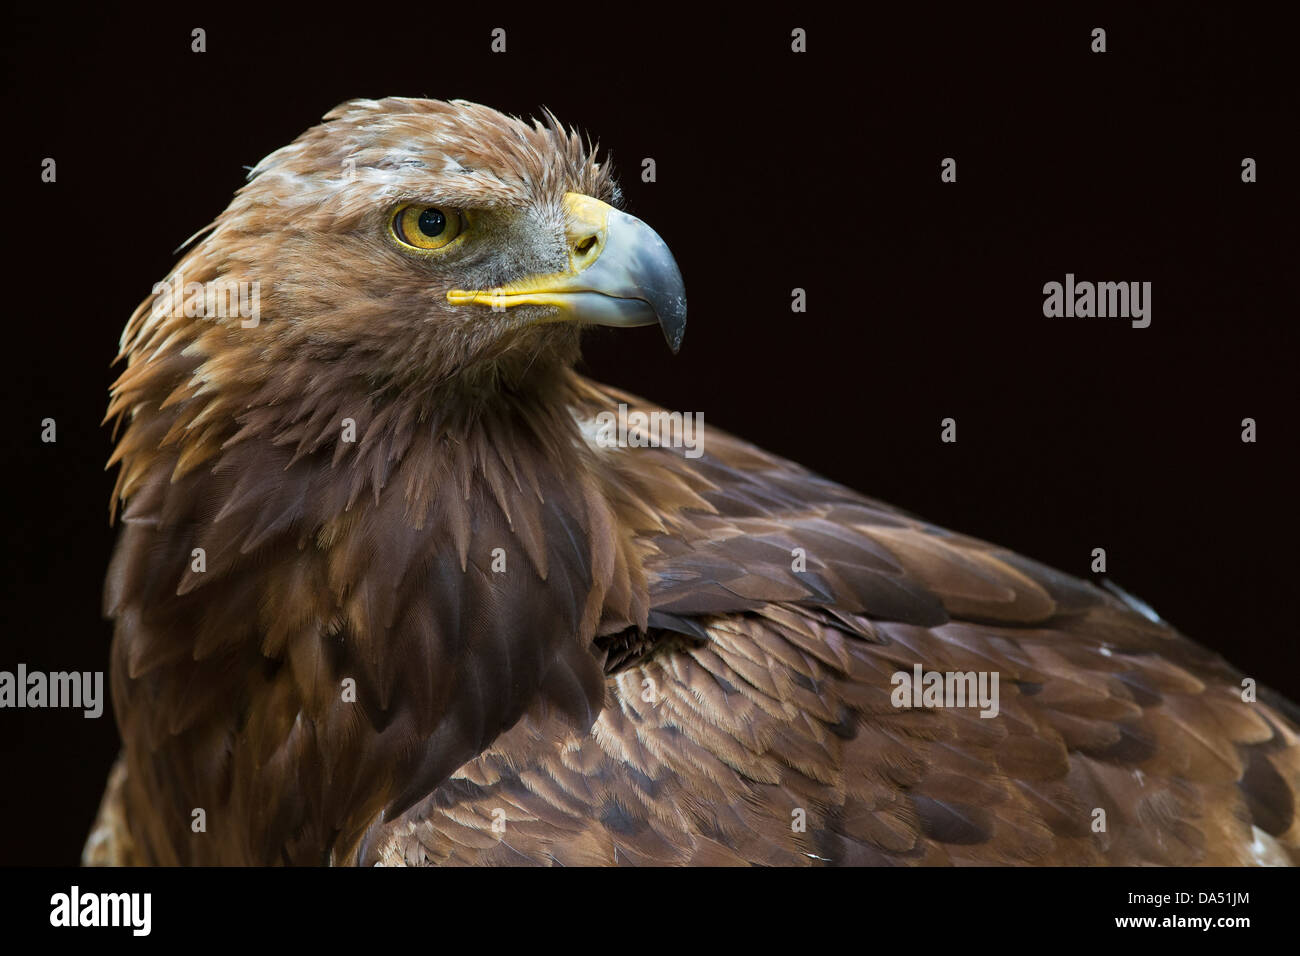 Portrait of a Golden Eagle Stock Photo